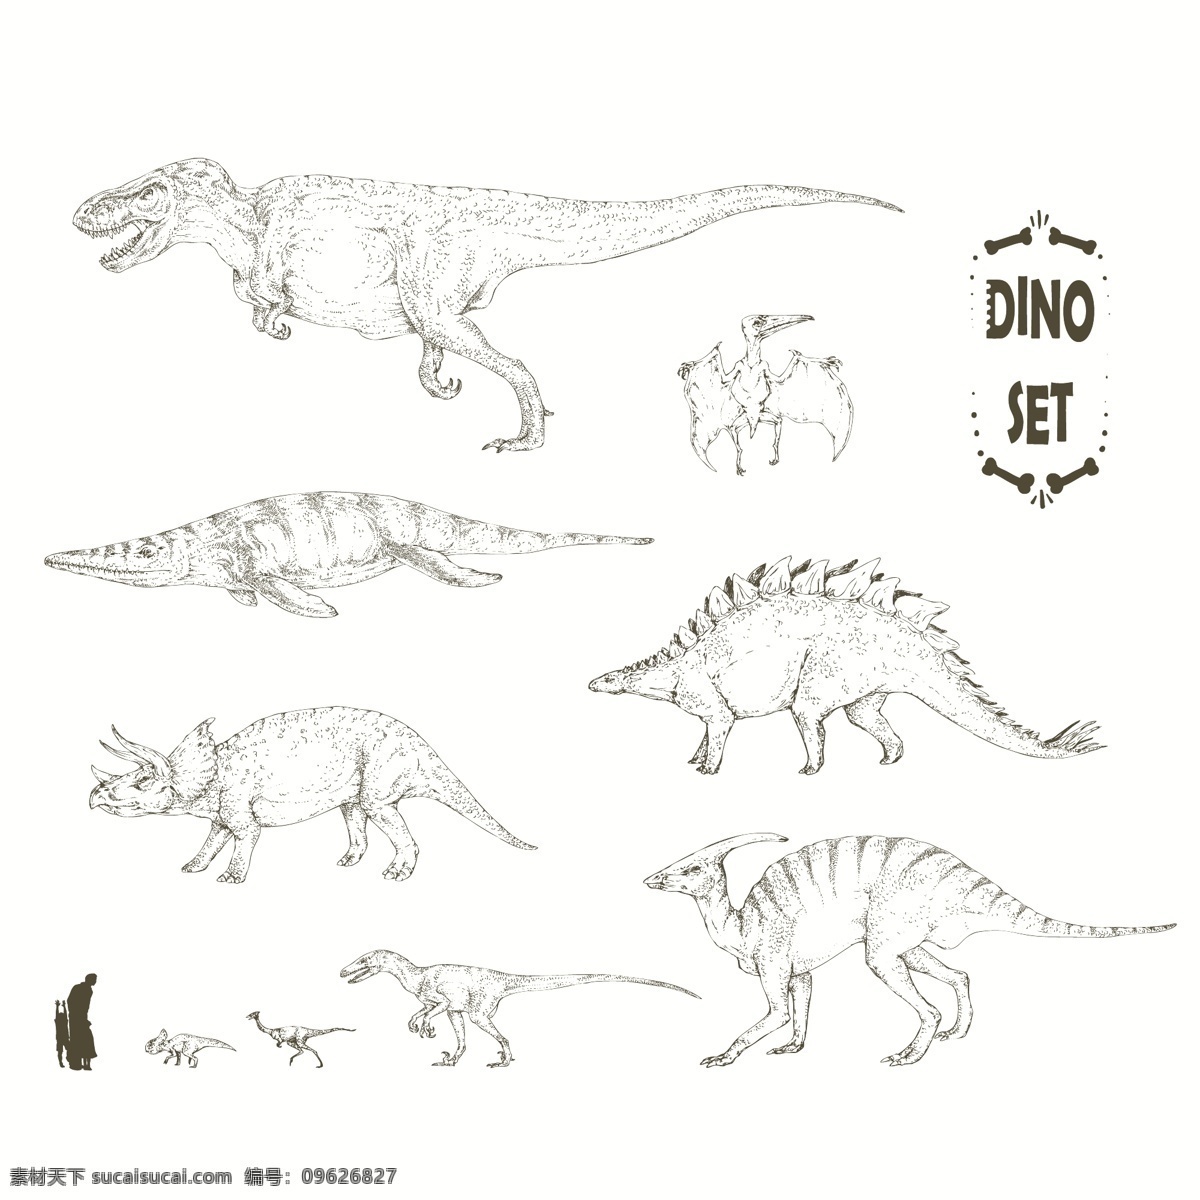 恐龙插画合集 自然 动物 怪物 插图 恐龙 包 野生采集 蜥蜴 野生动物 大型爬行动物 史前 捕食者 侏罗纪